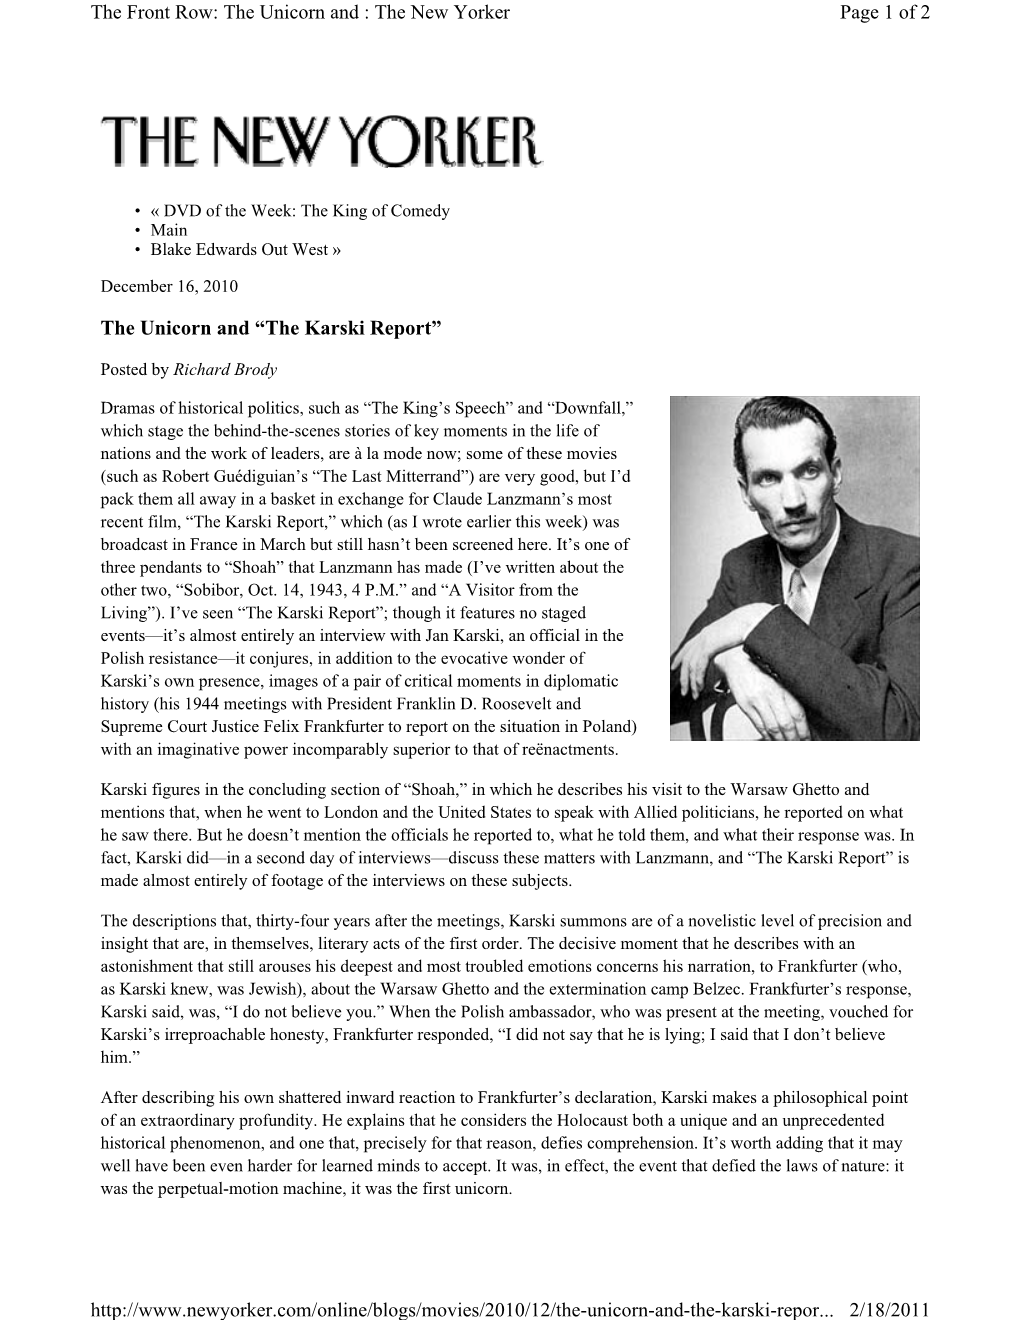 The Karski Report”